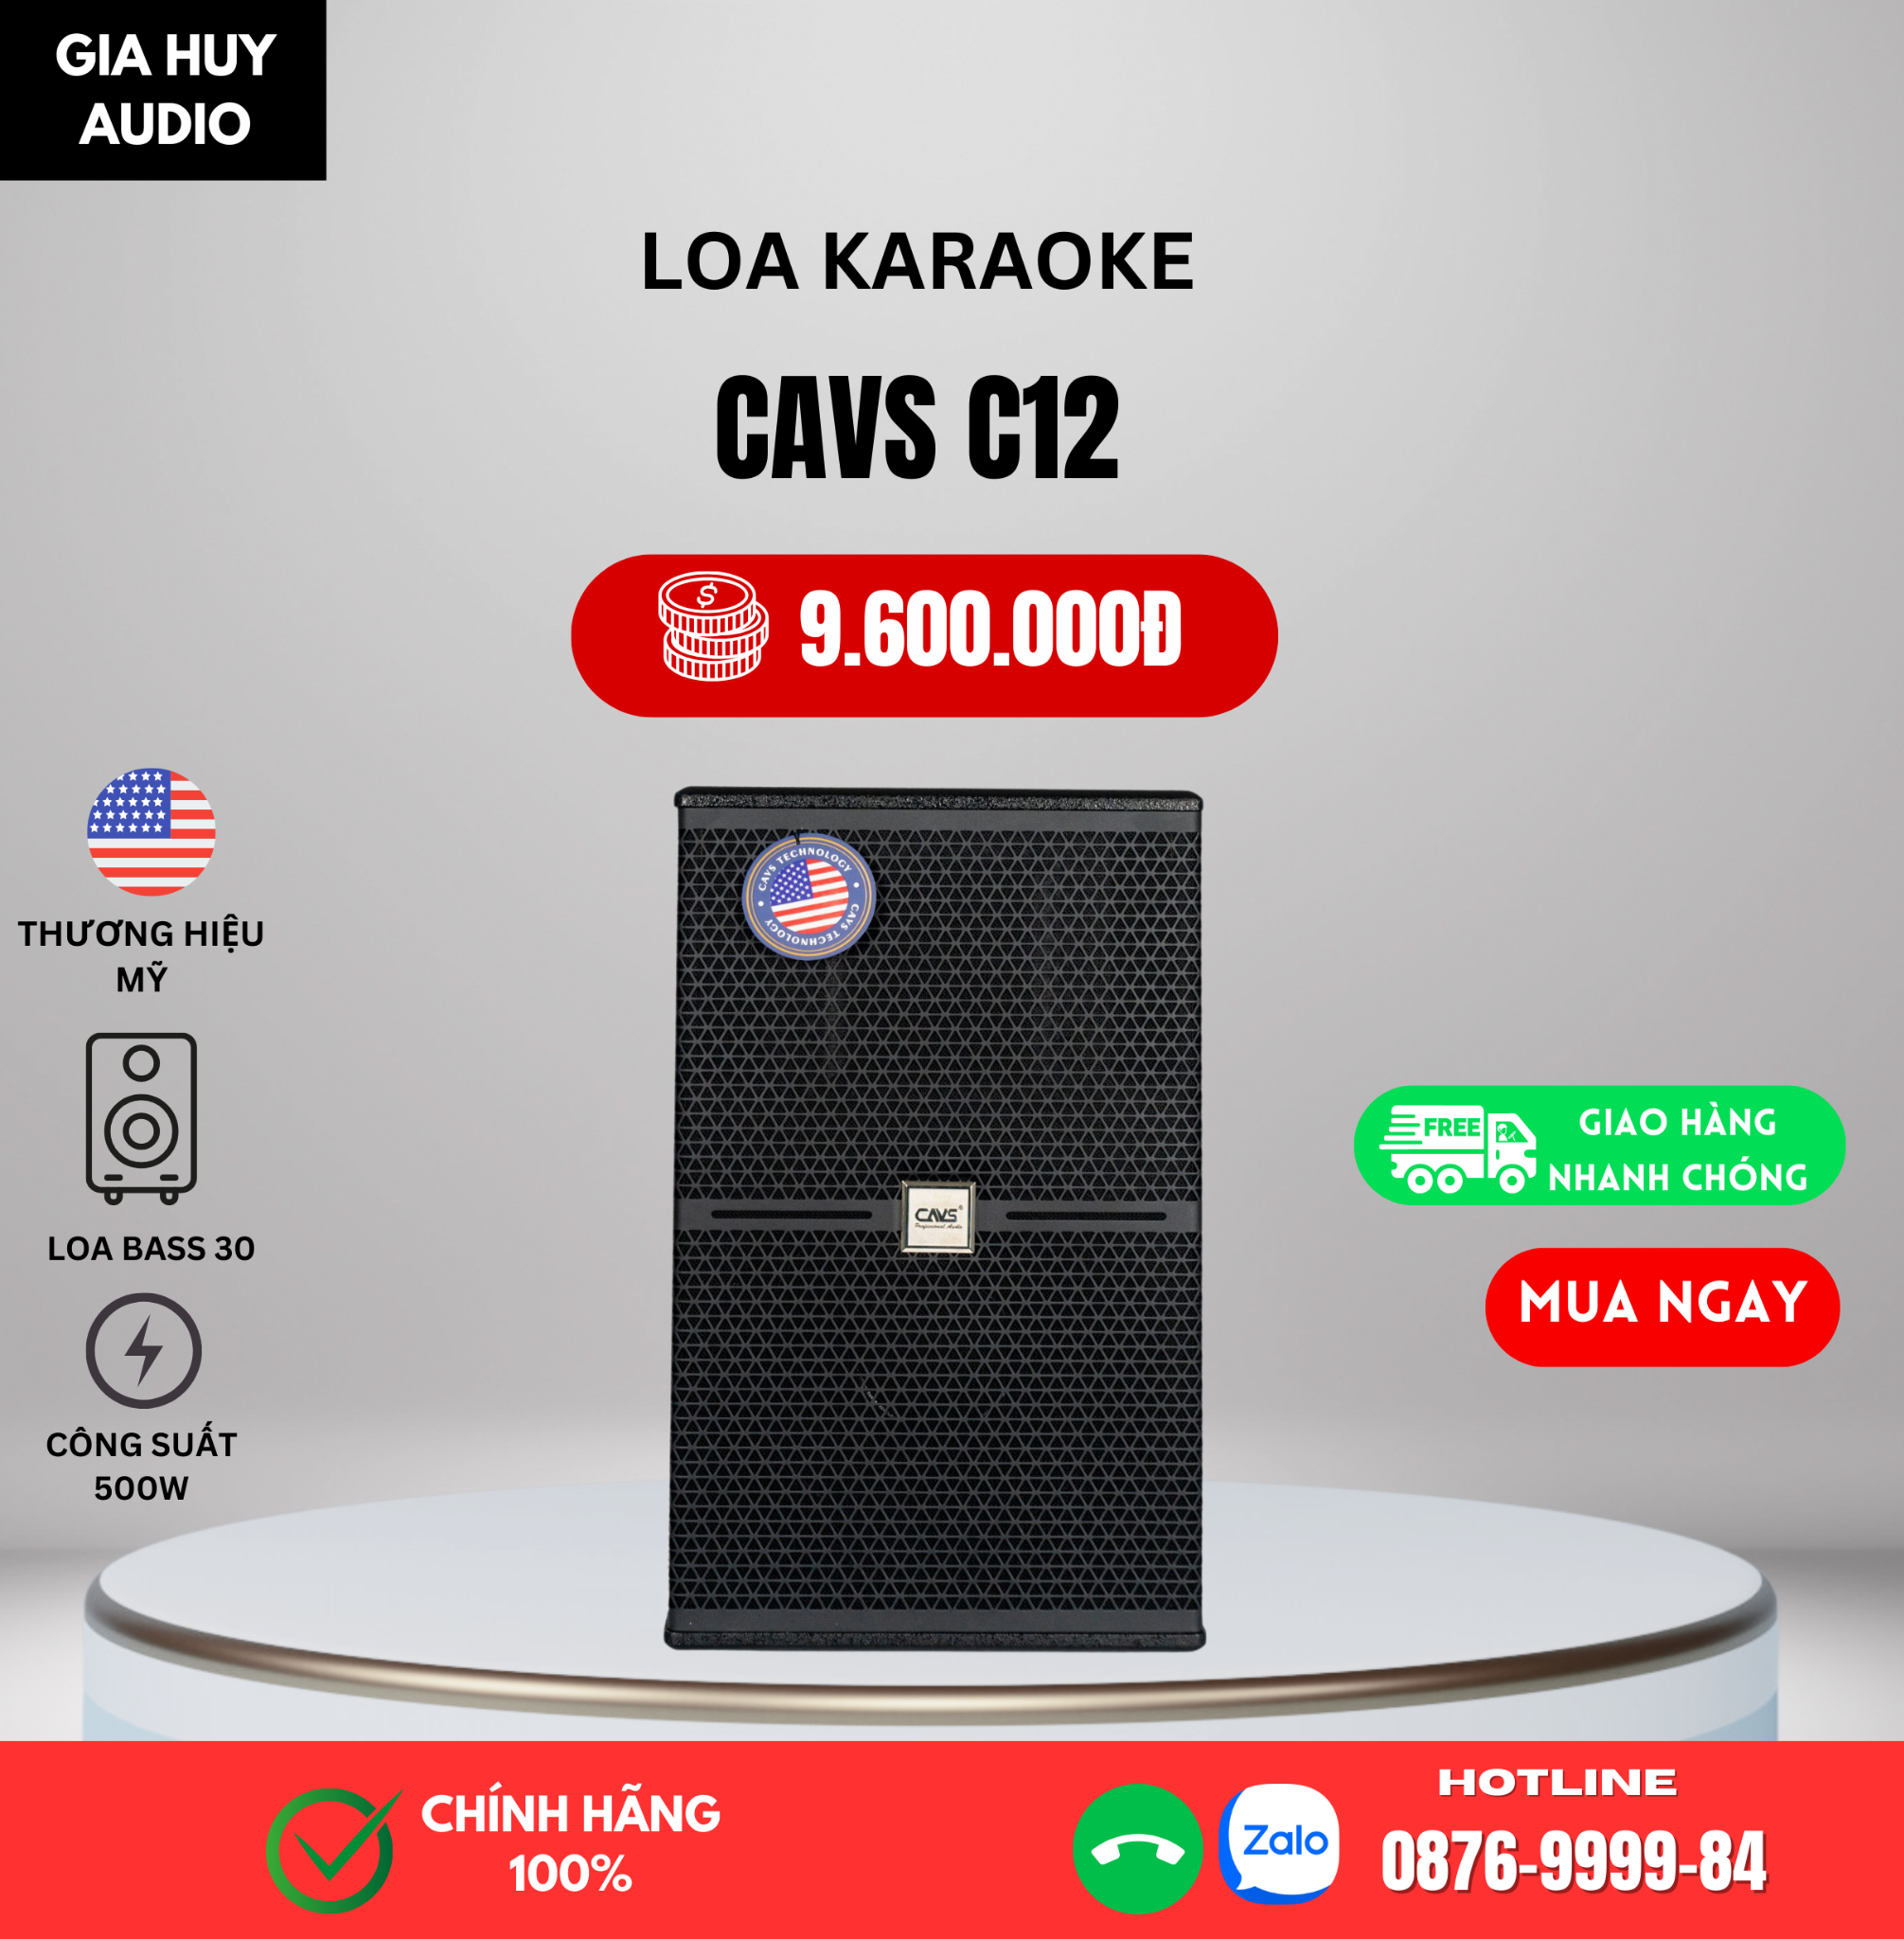 Loa Karaoke JBL chính hãng  Giá tốt, giao hàng nhanh